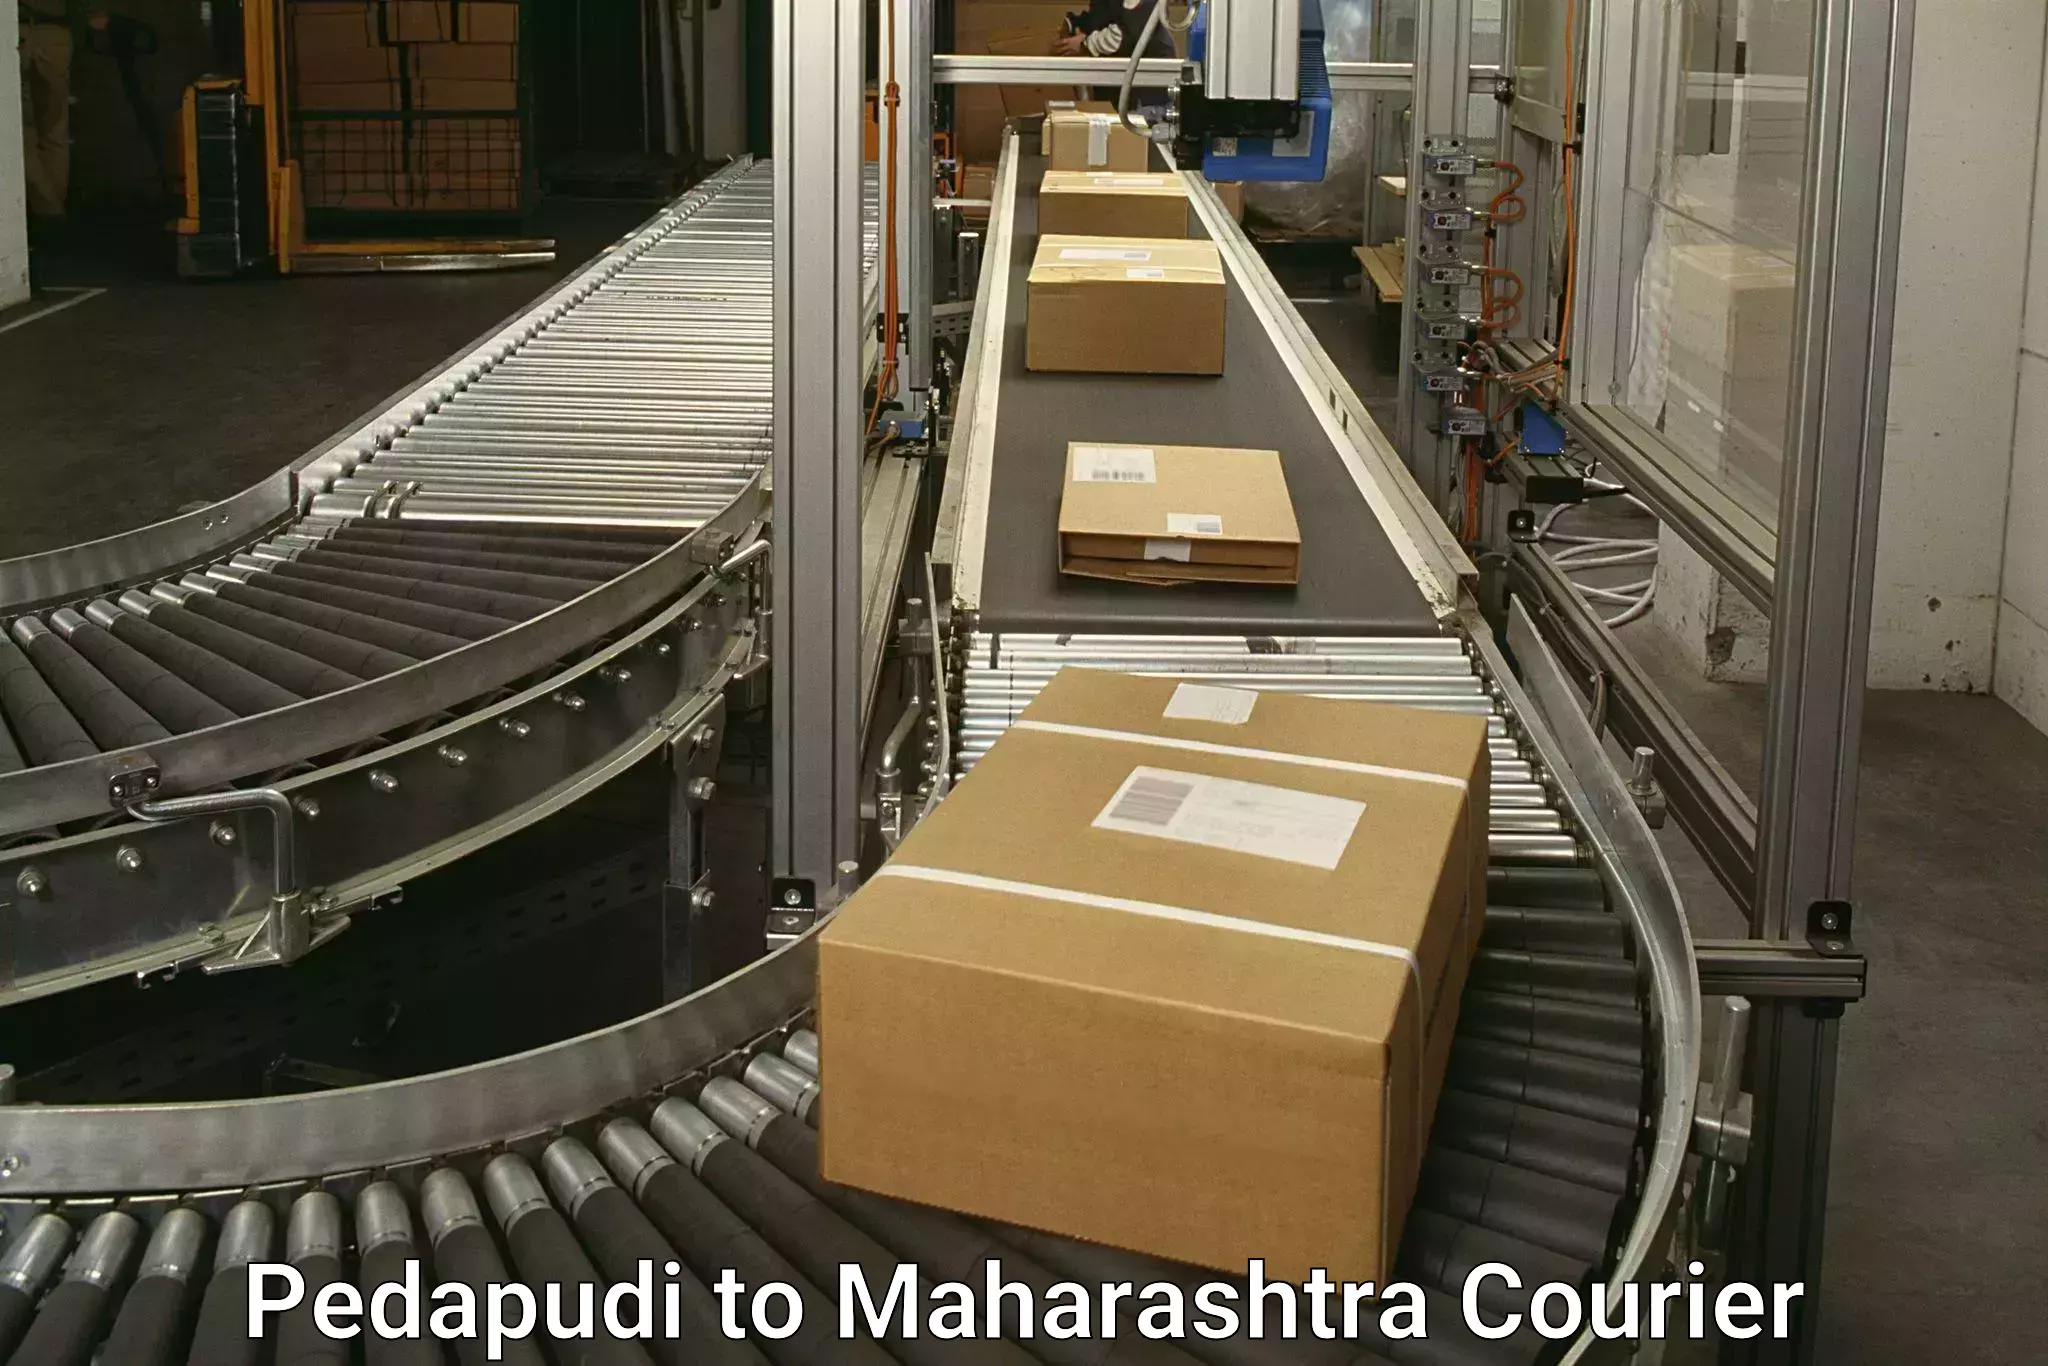 Premium courier solutions Pedapudi to Amravati